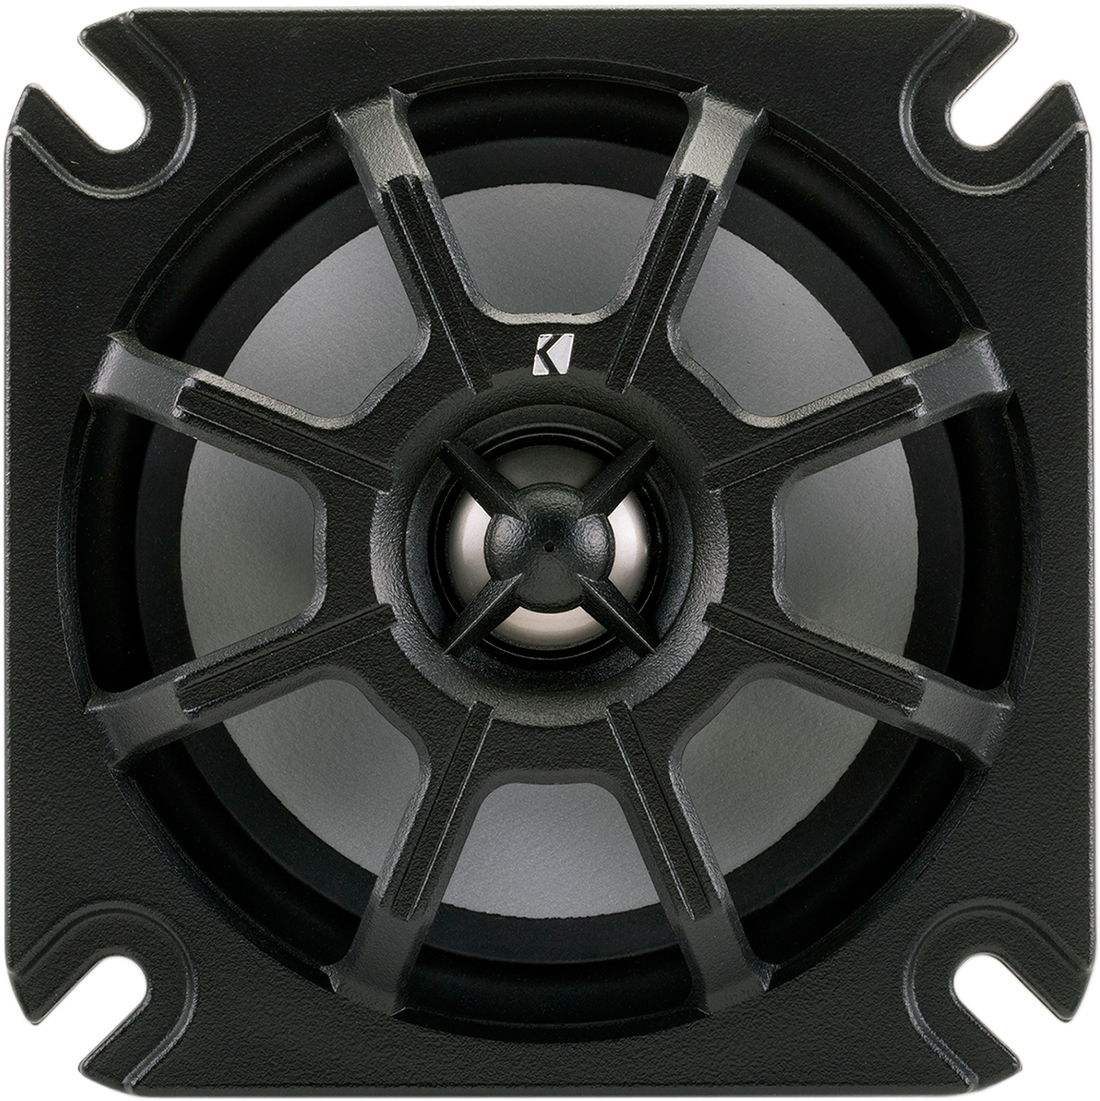 4405-0576 - KICKER 5.25" Coaxial Speakers - 4 ohm 10PS52504